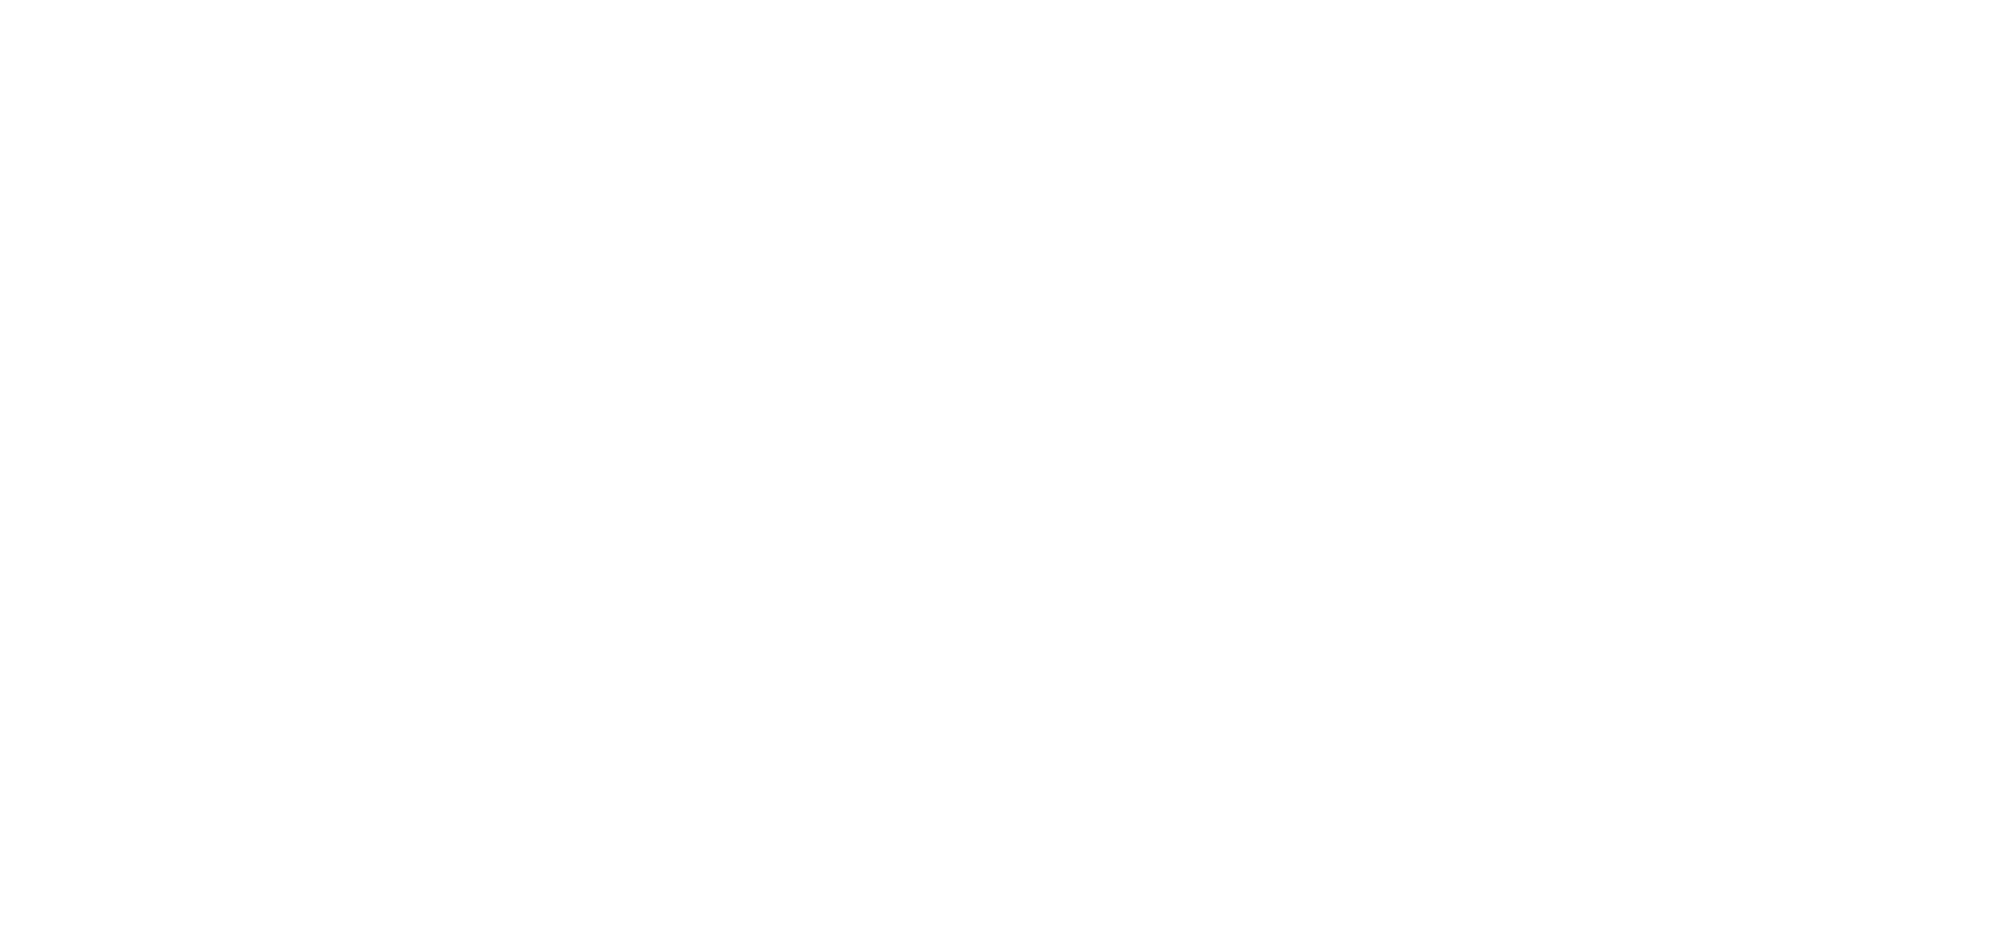 Las Chimeneas